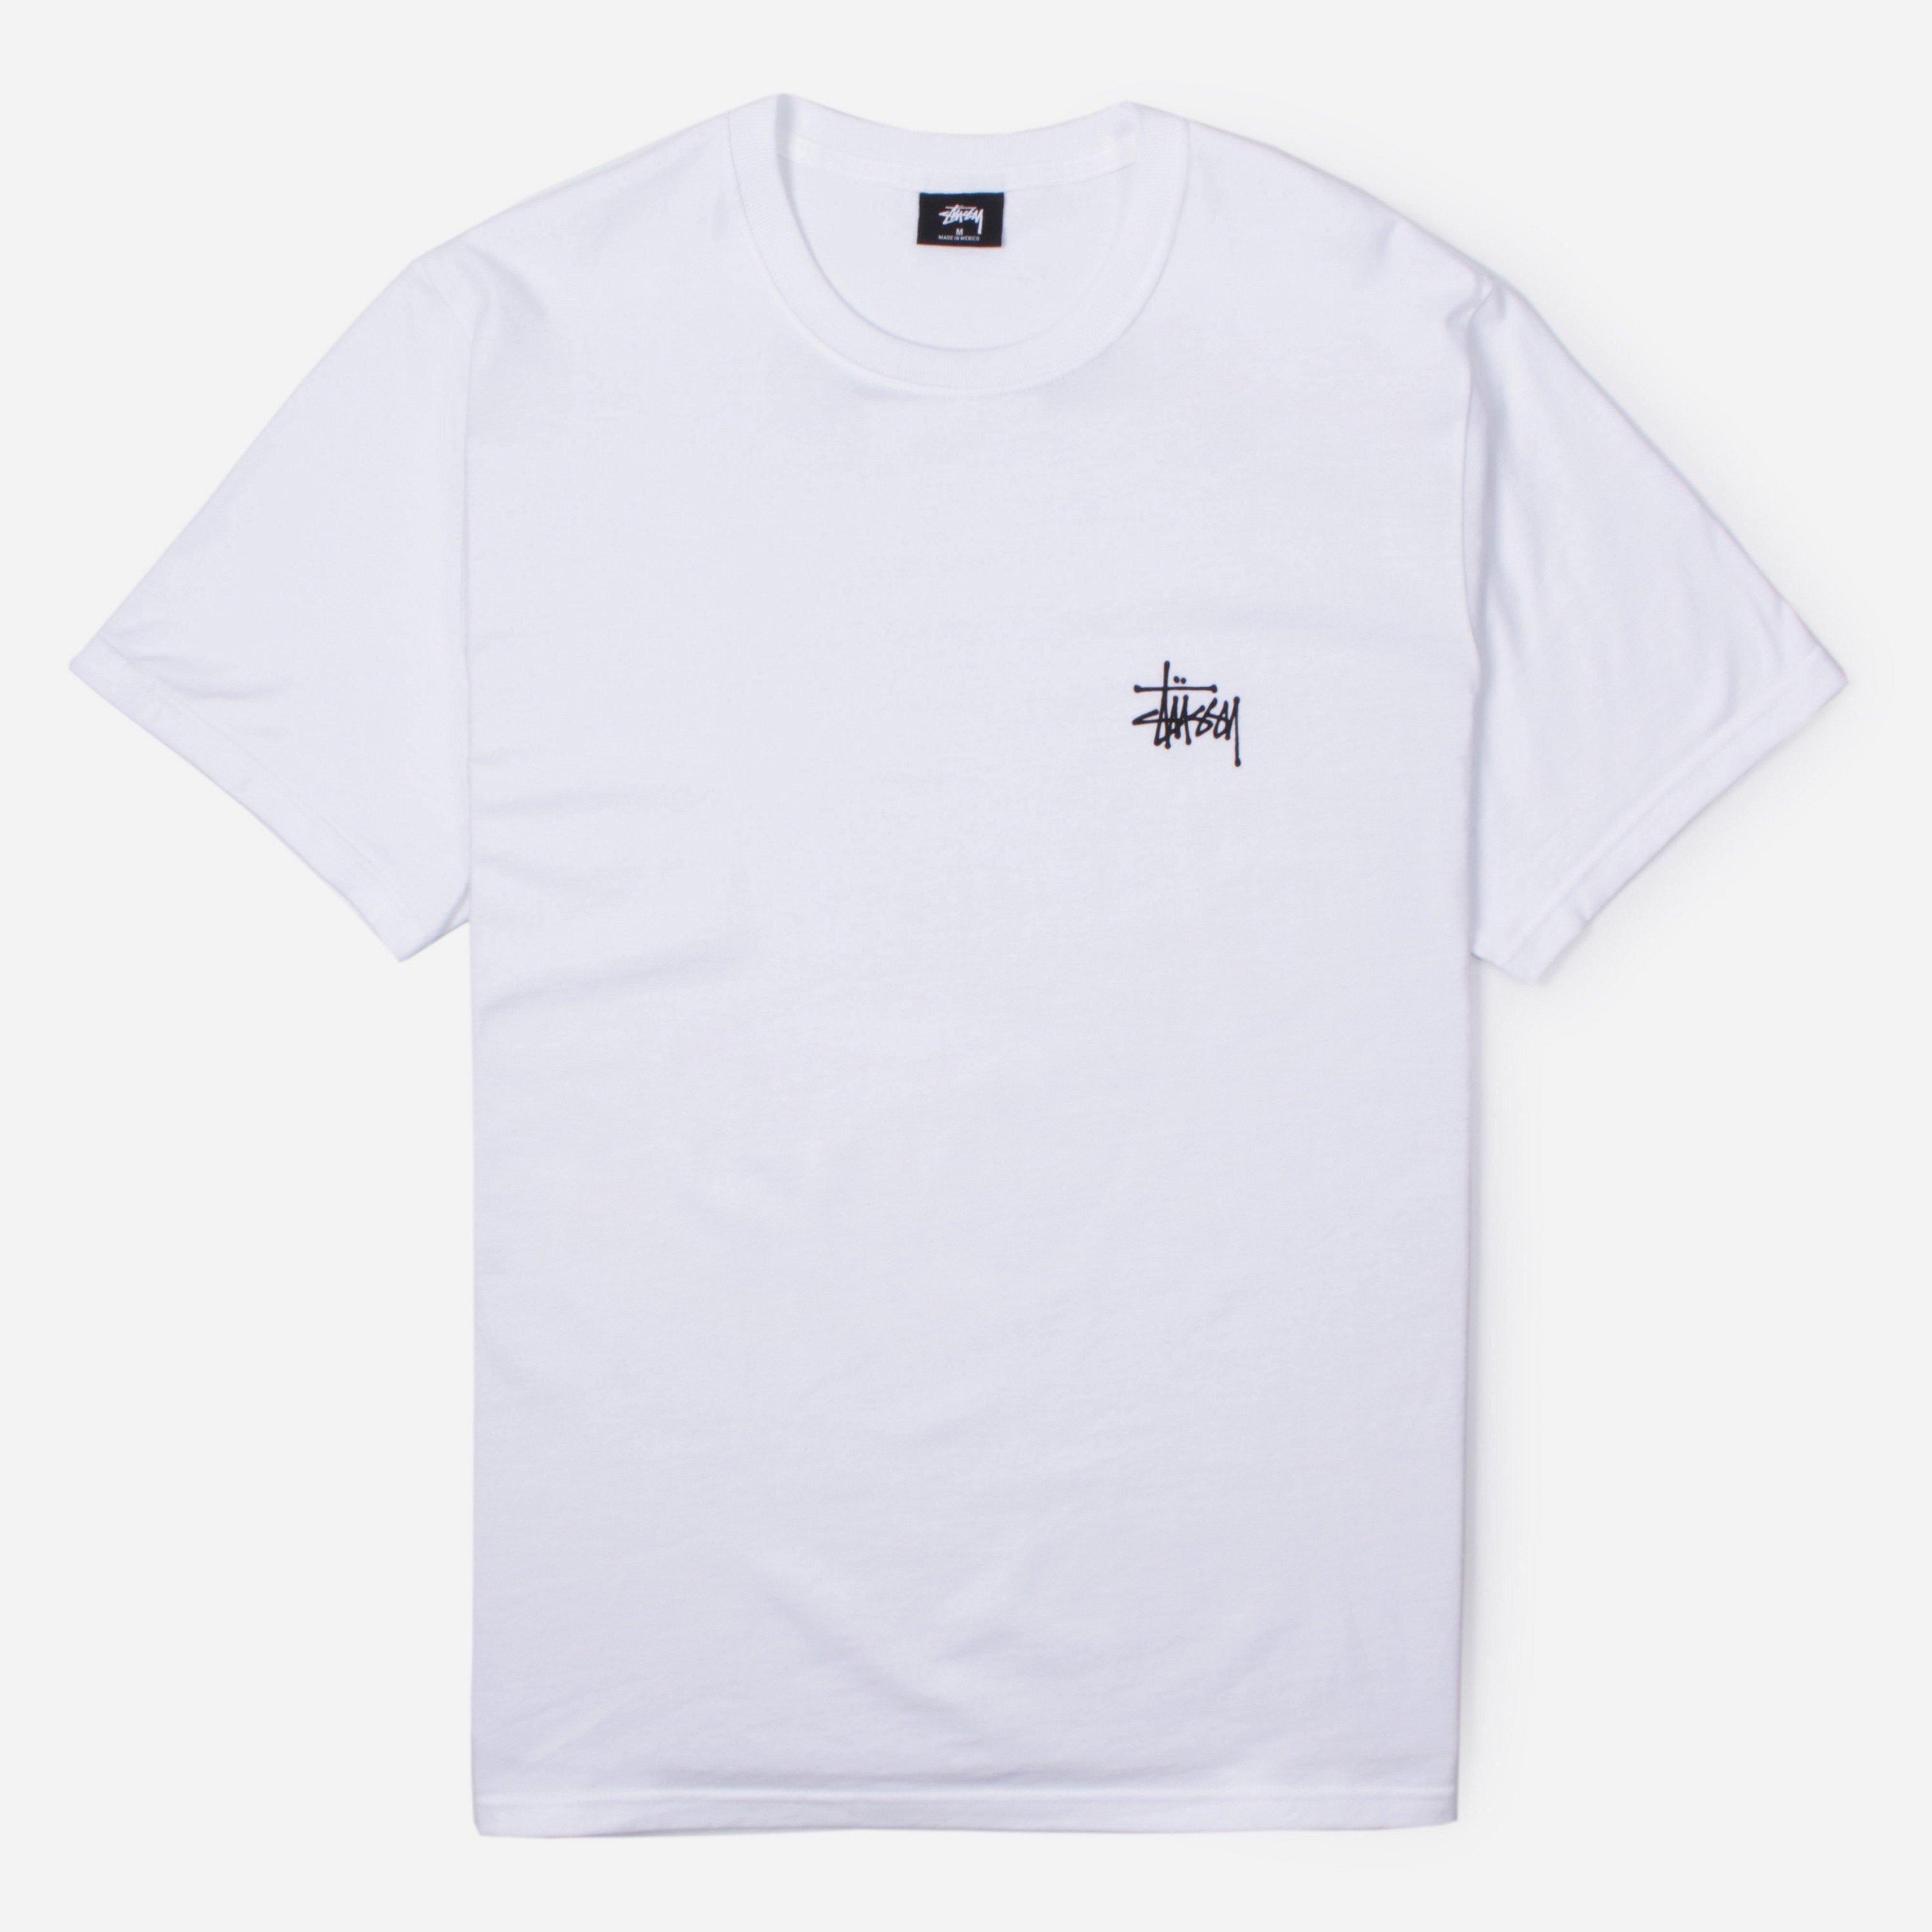 Stussy Basic Short Sleeve T-shirt in White for Men - Lyst